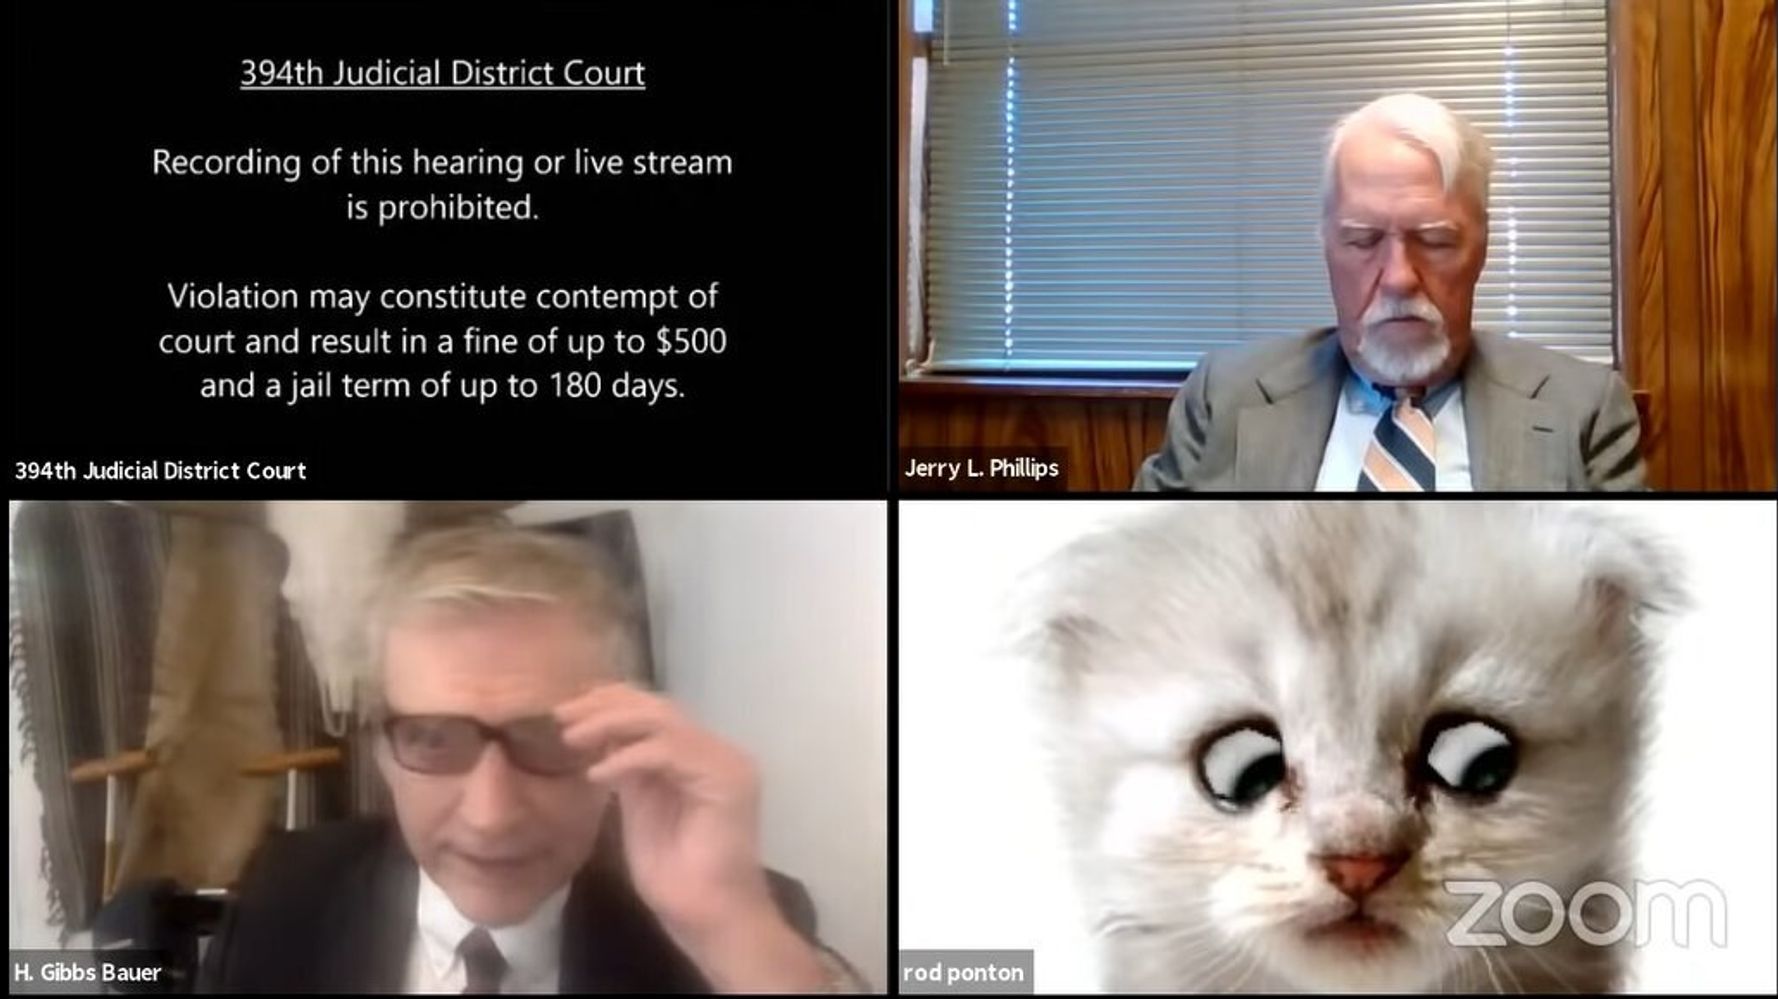 “판사님, 저는 고양이가 아닙니다”: 미국 화상 법원 심리에 새끼 고양이가 등장 해 화제가되고있다 (영상)